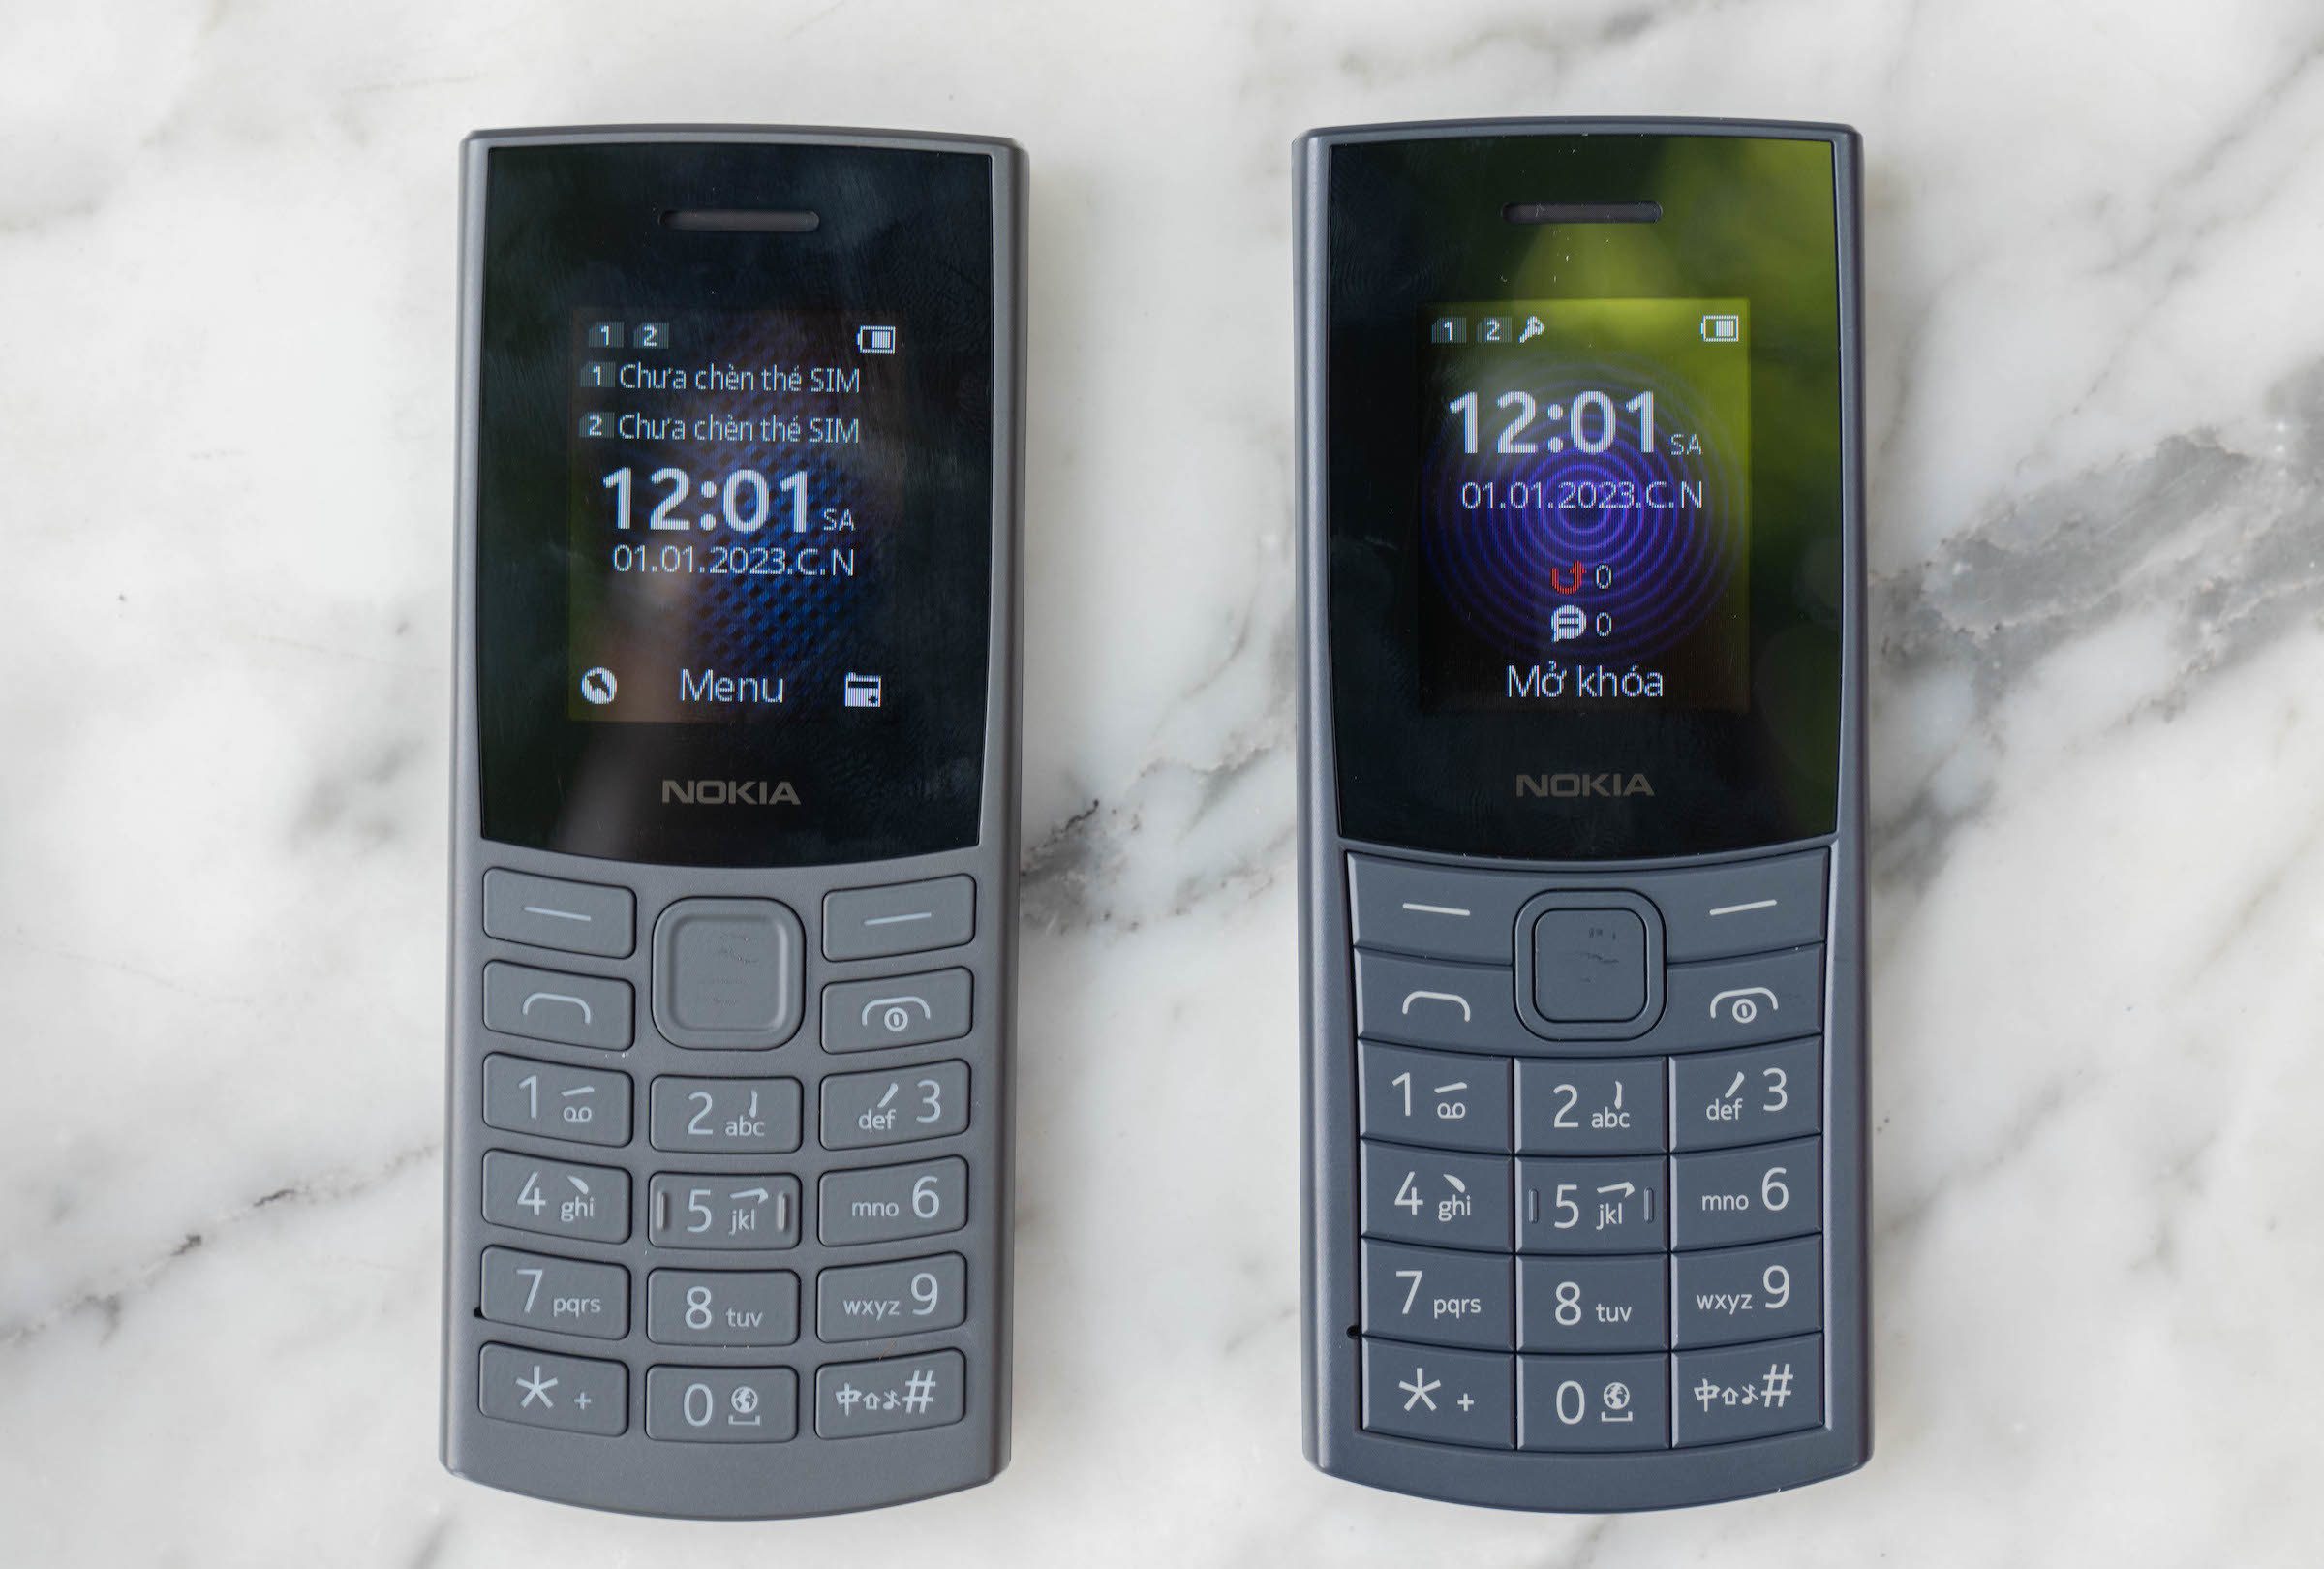 Nokia 105 4G Pro, Nokia 110 4G Pro